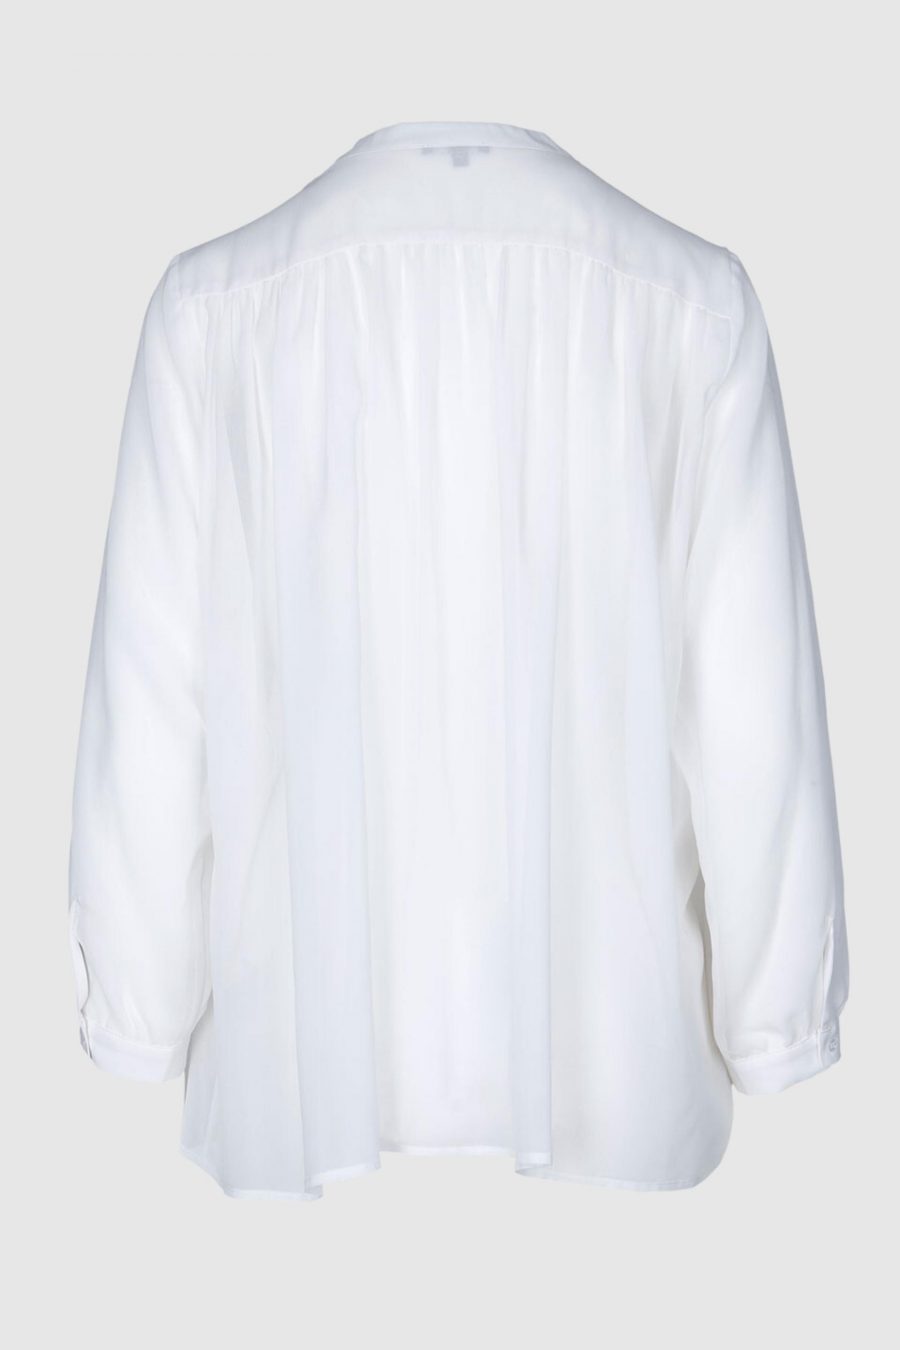 Bluse aus reiner Seide in British White